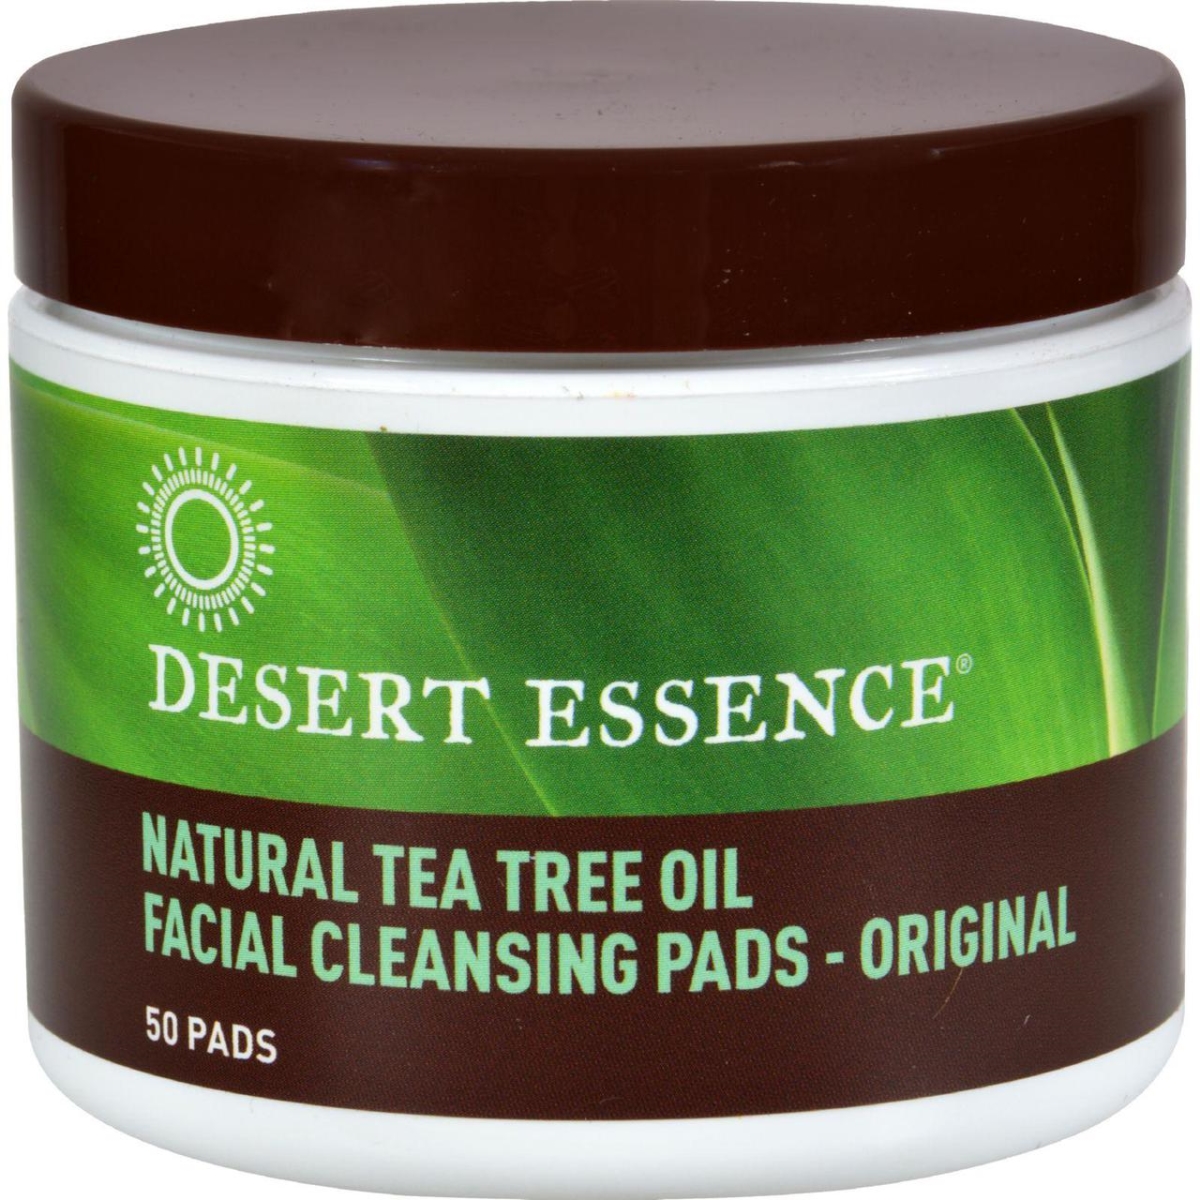 Hg0375089 Natural Tea Tree Oil Facial Cleansing Pads - Original, 50 Pads